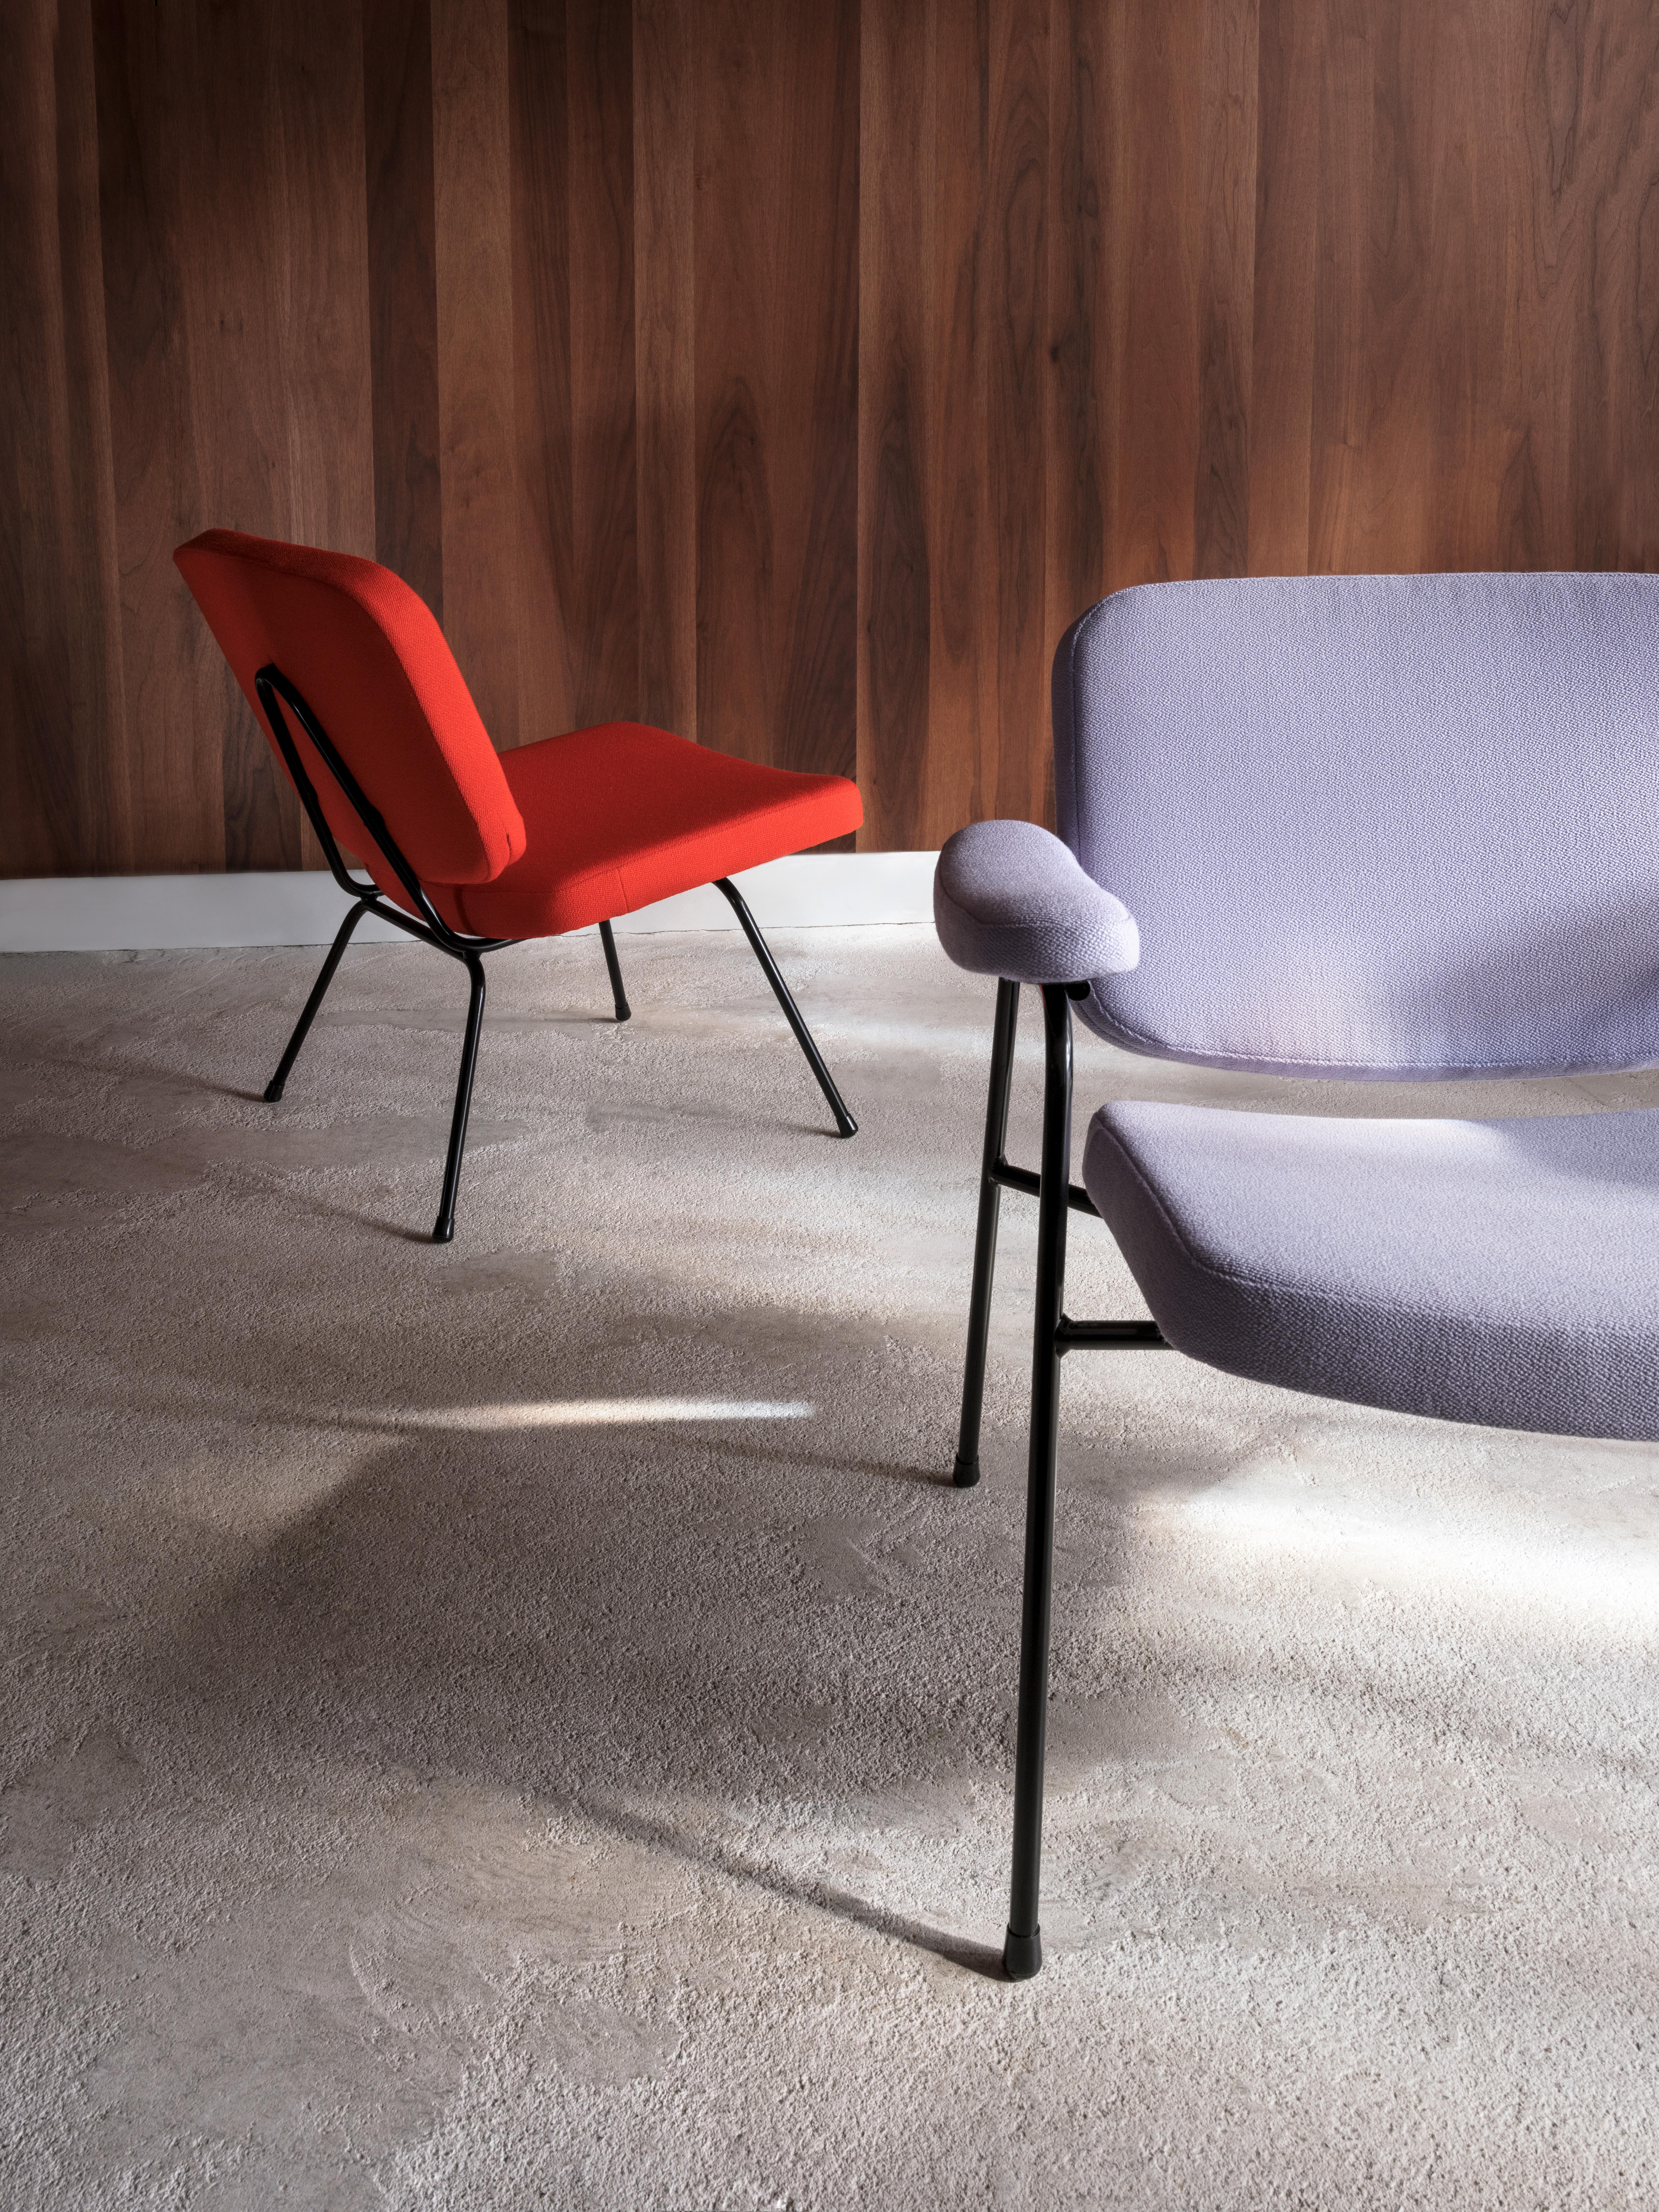 Einzelheiten zum Produkt

Wir stellen den Designklassiker CM190 von Pierre Paulin aus der Jahrhundertmitte von 1958 vor. 

Eleganter, minimalistischer Sessel, kombiniert mit modernem Komfort. 

Erhältlich in zwei Versionen: Moulin Lounge und